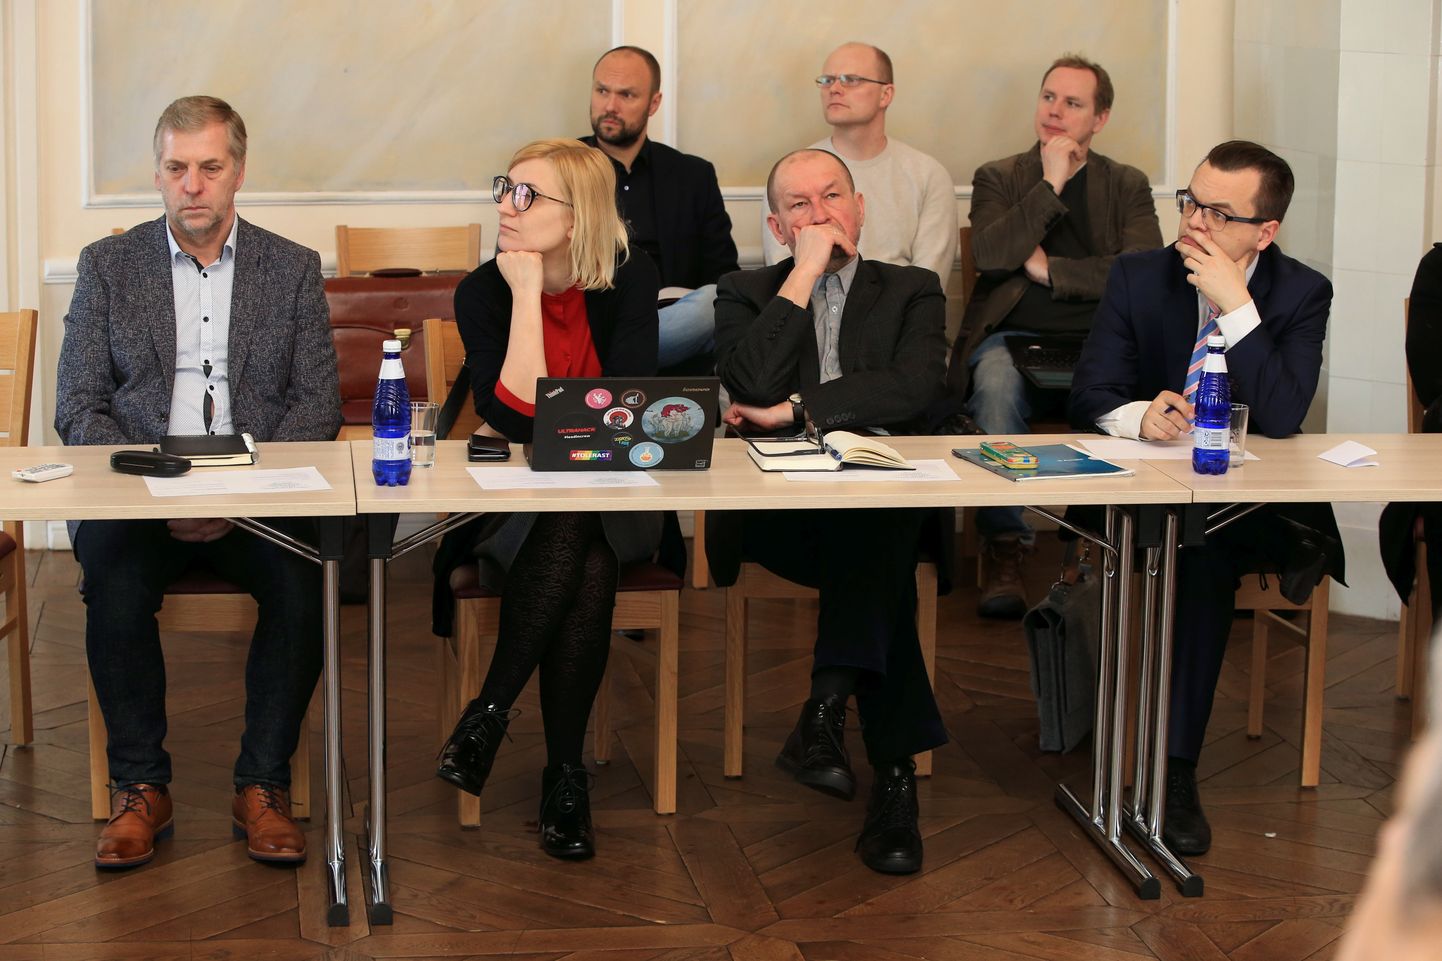 Kui volikogu nõustub, siis asuvad Tartu abilinnapeana ametisse Gea Kangilaski (keskel vasakul) ja sel fotol temast paremal istuv Asko Tamme.